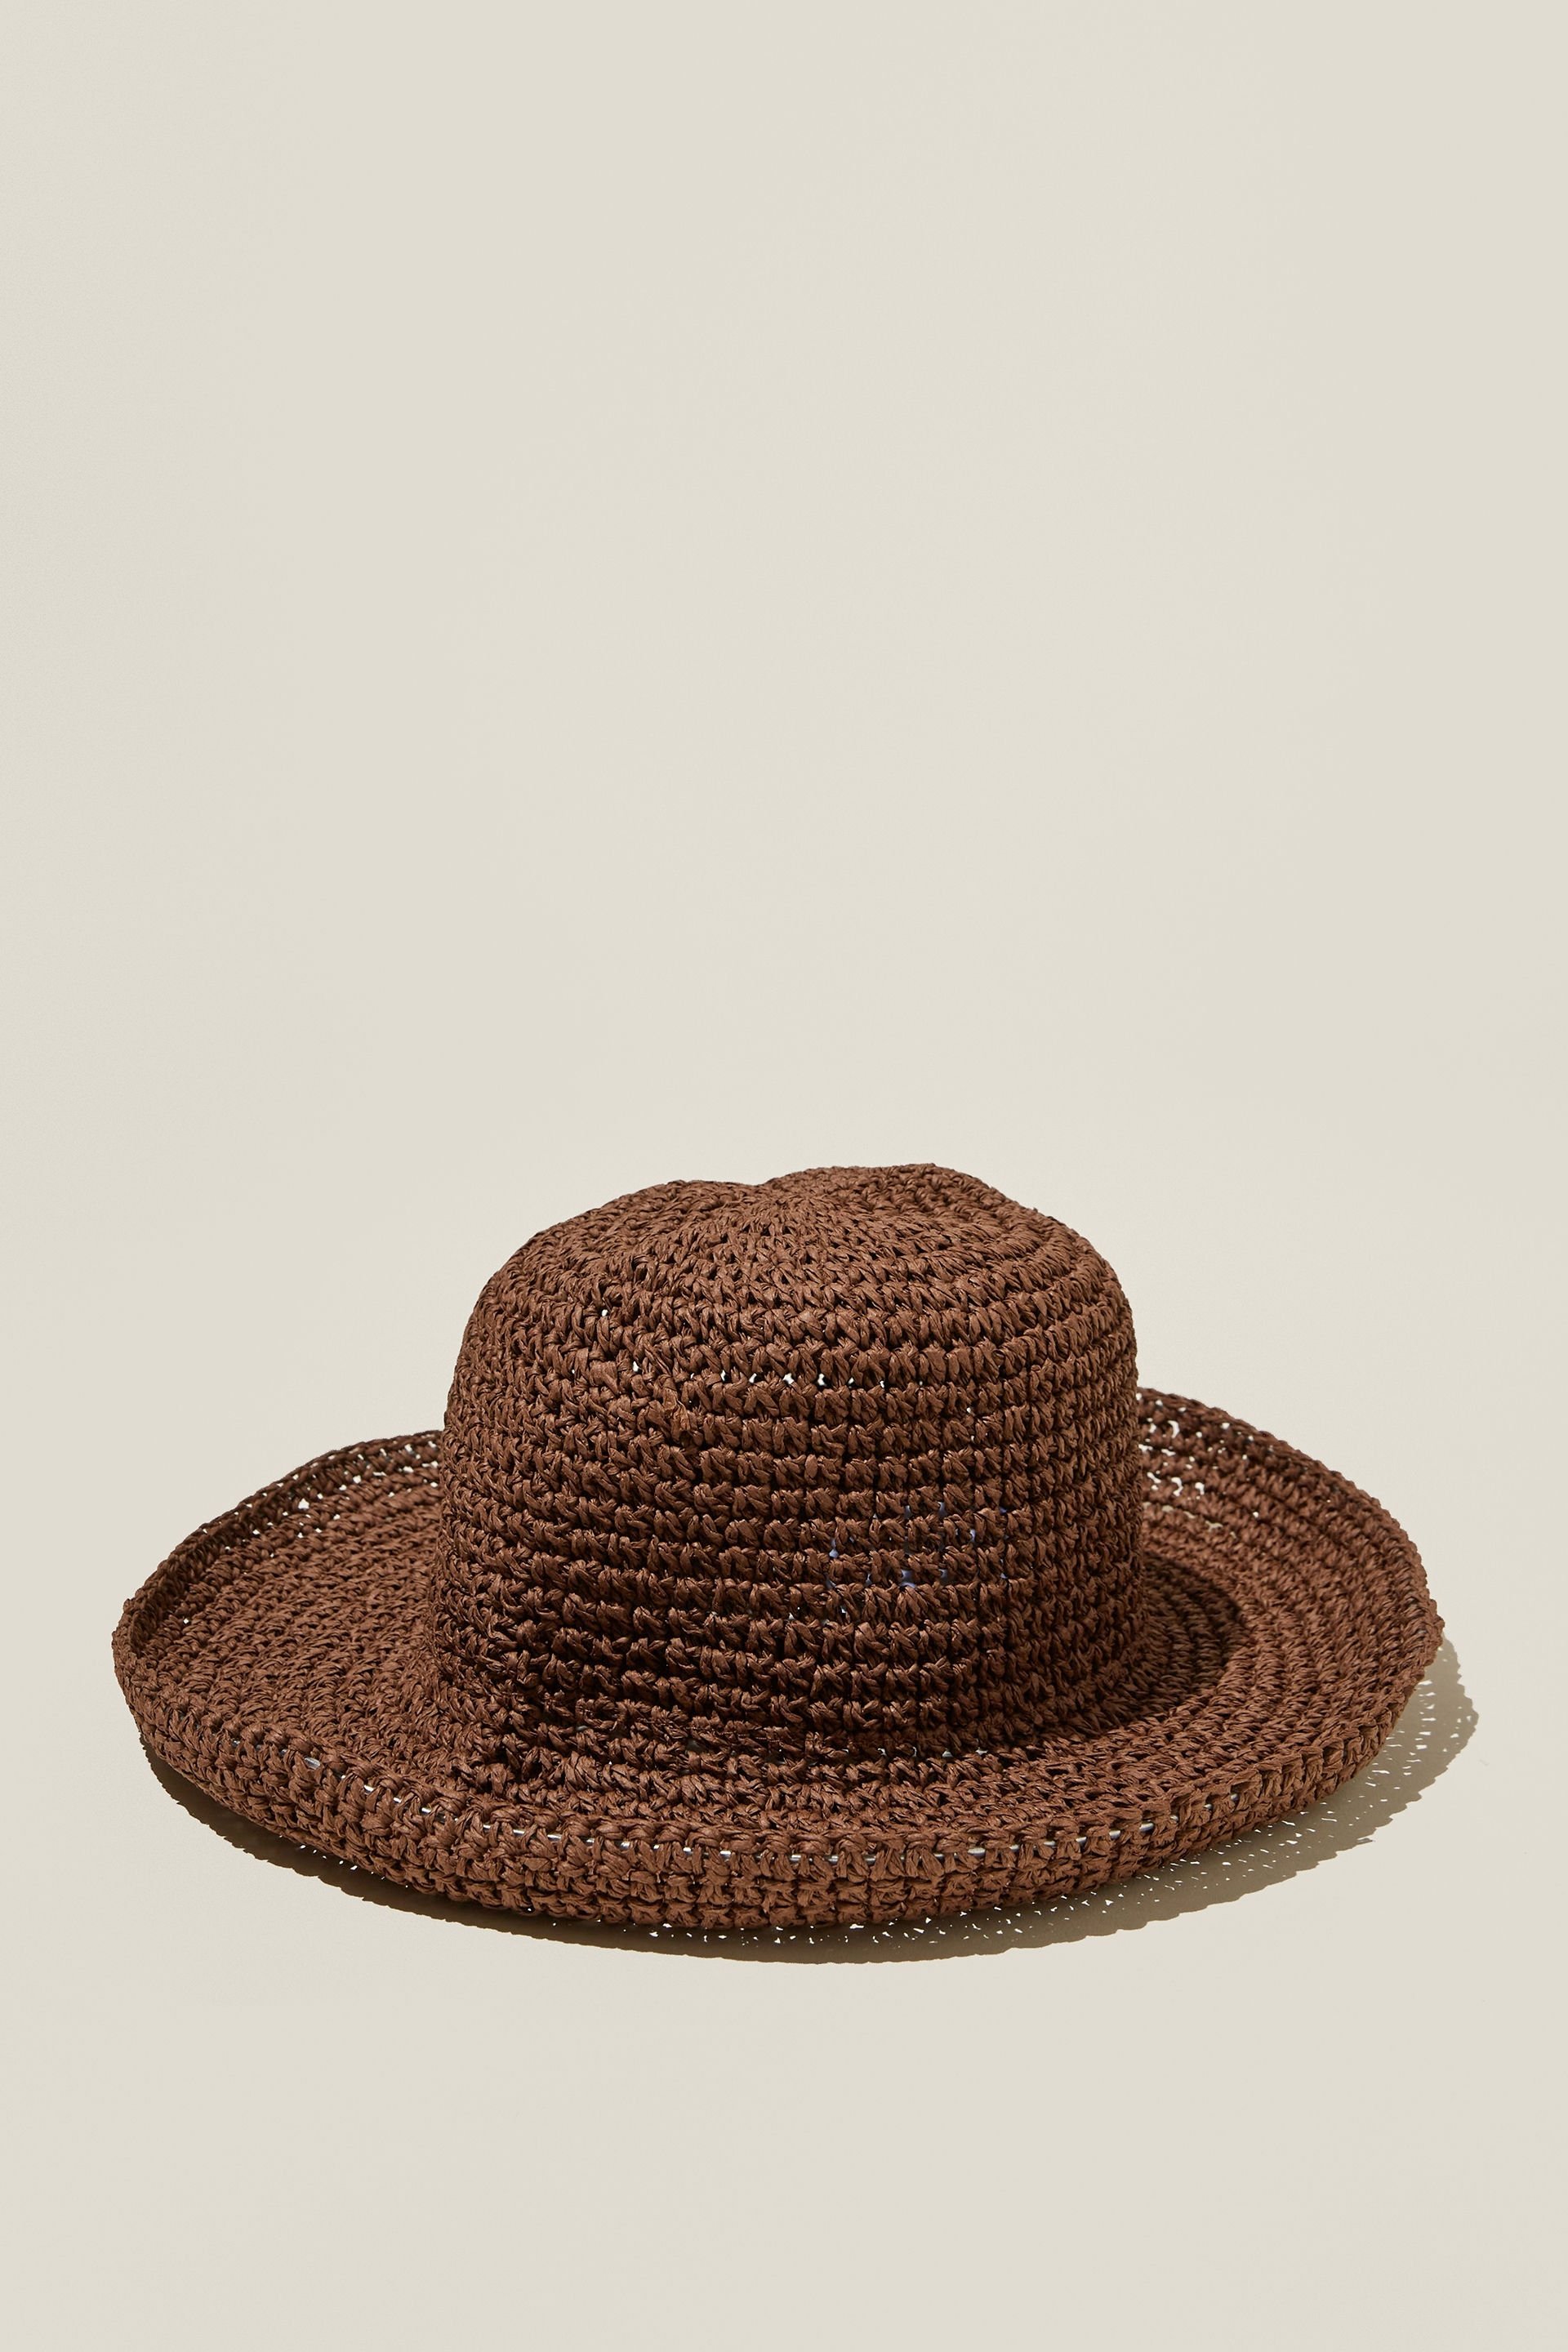 Rubi - Brooke Bucket Hat - Chocolate